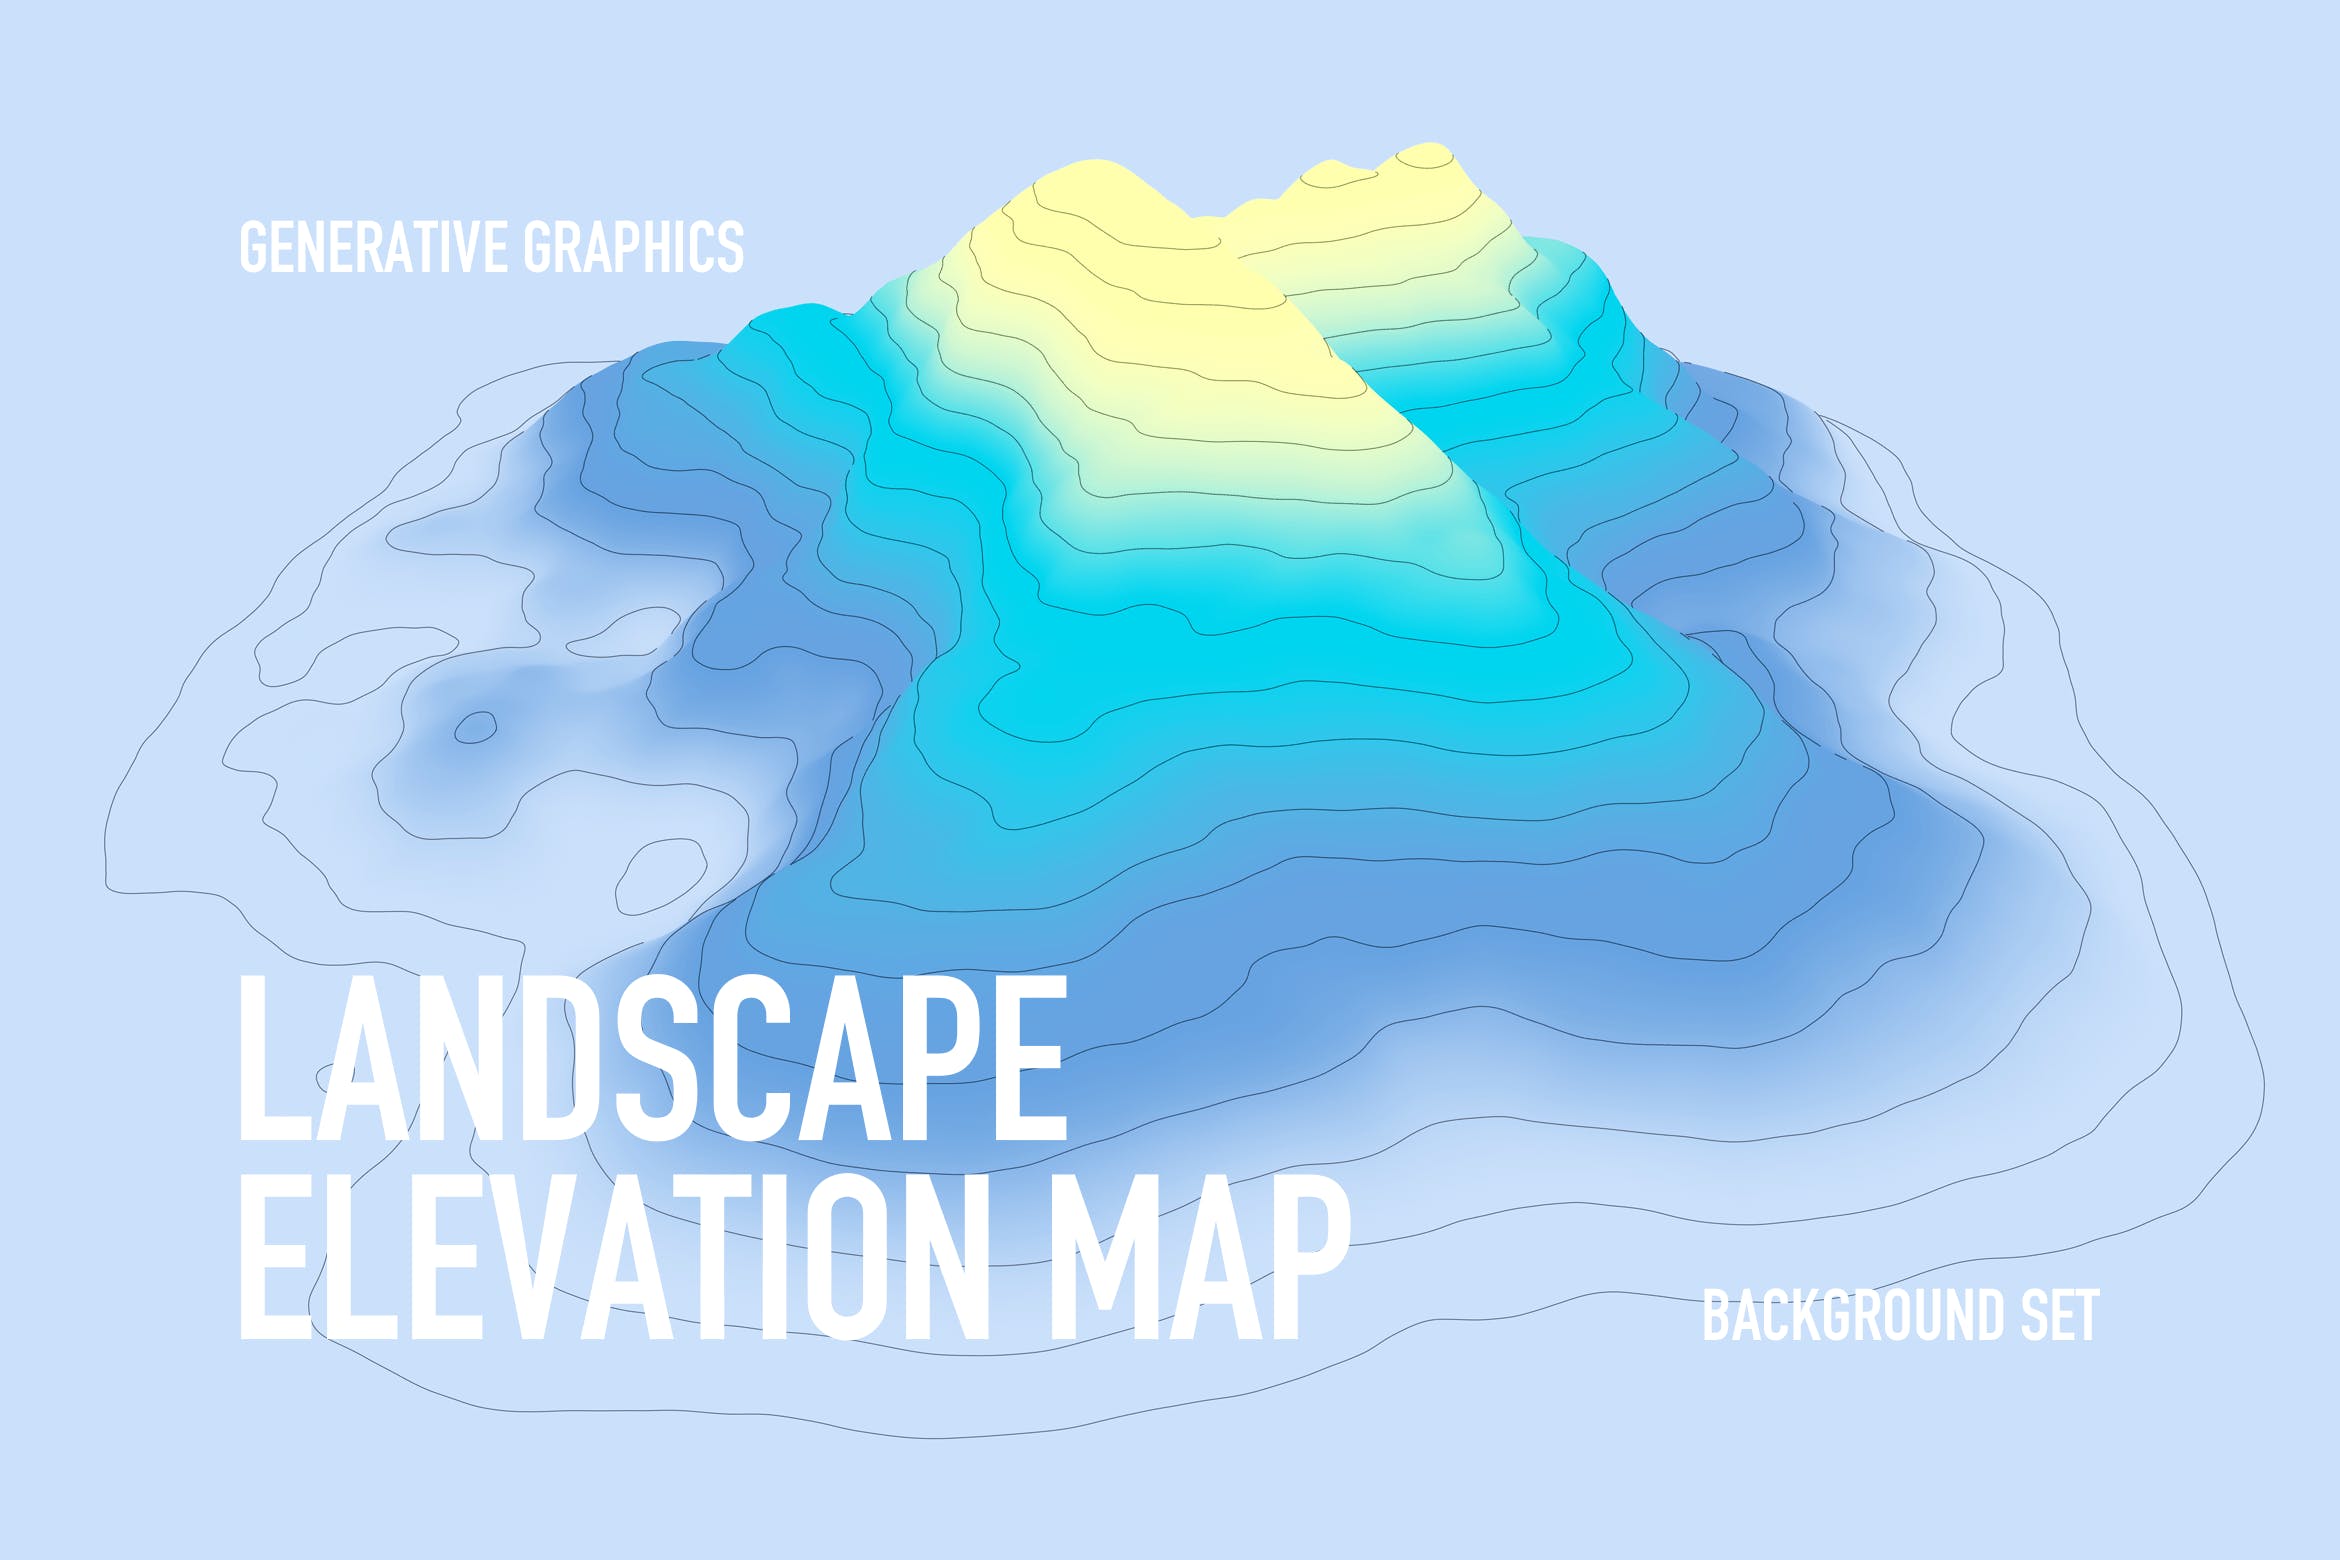 山脉轮廓线几何图形矢量背景素材 Landscape Elevation Map Backgrounds插图